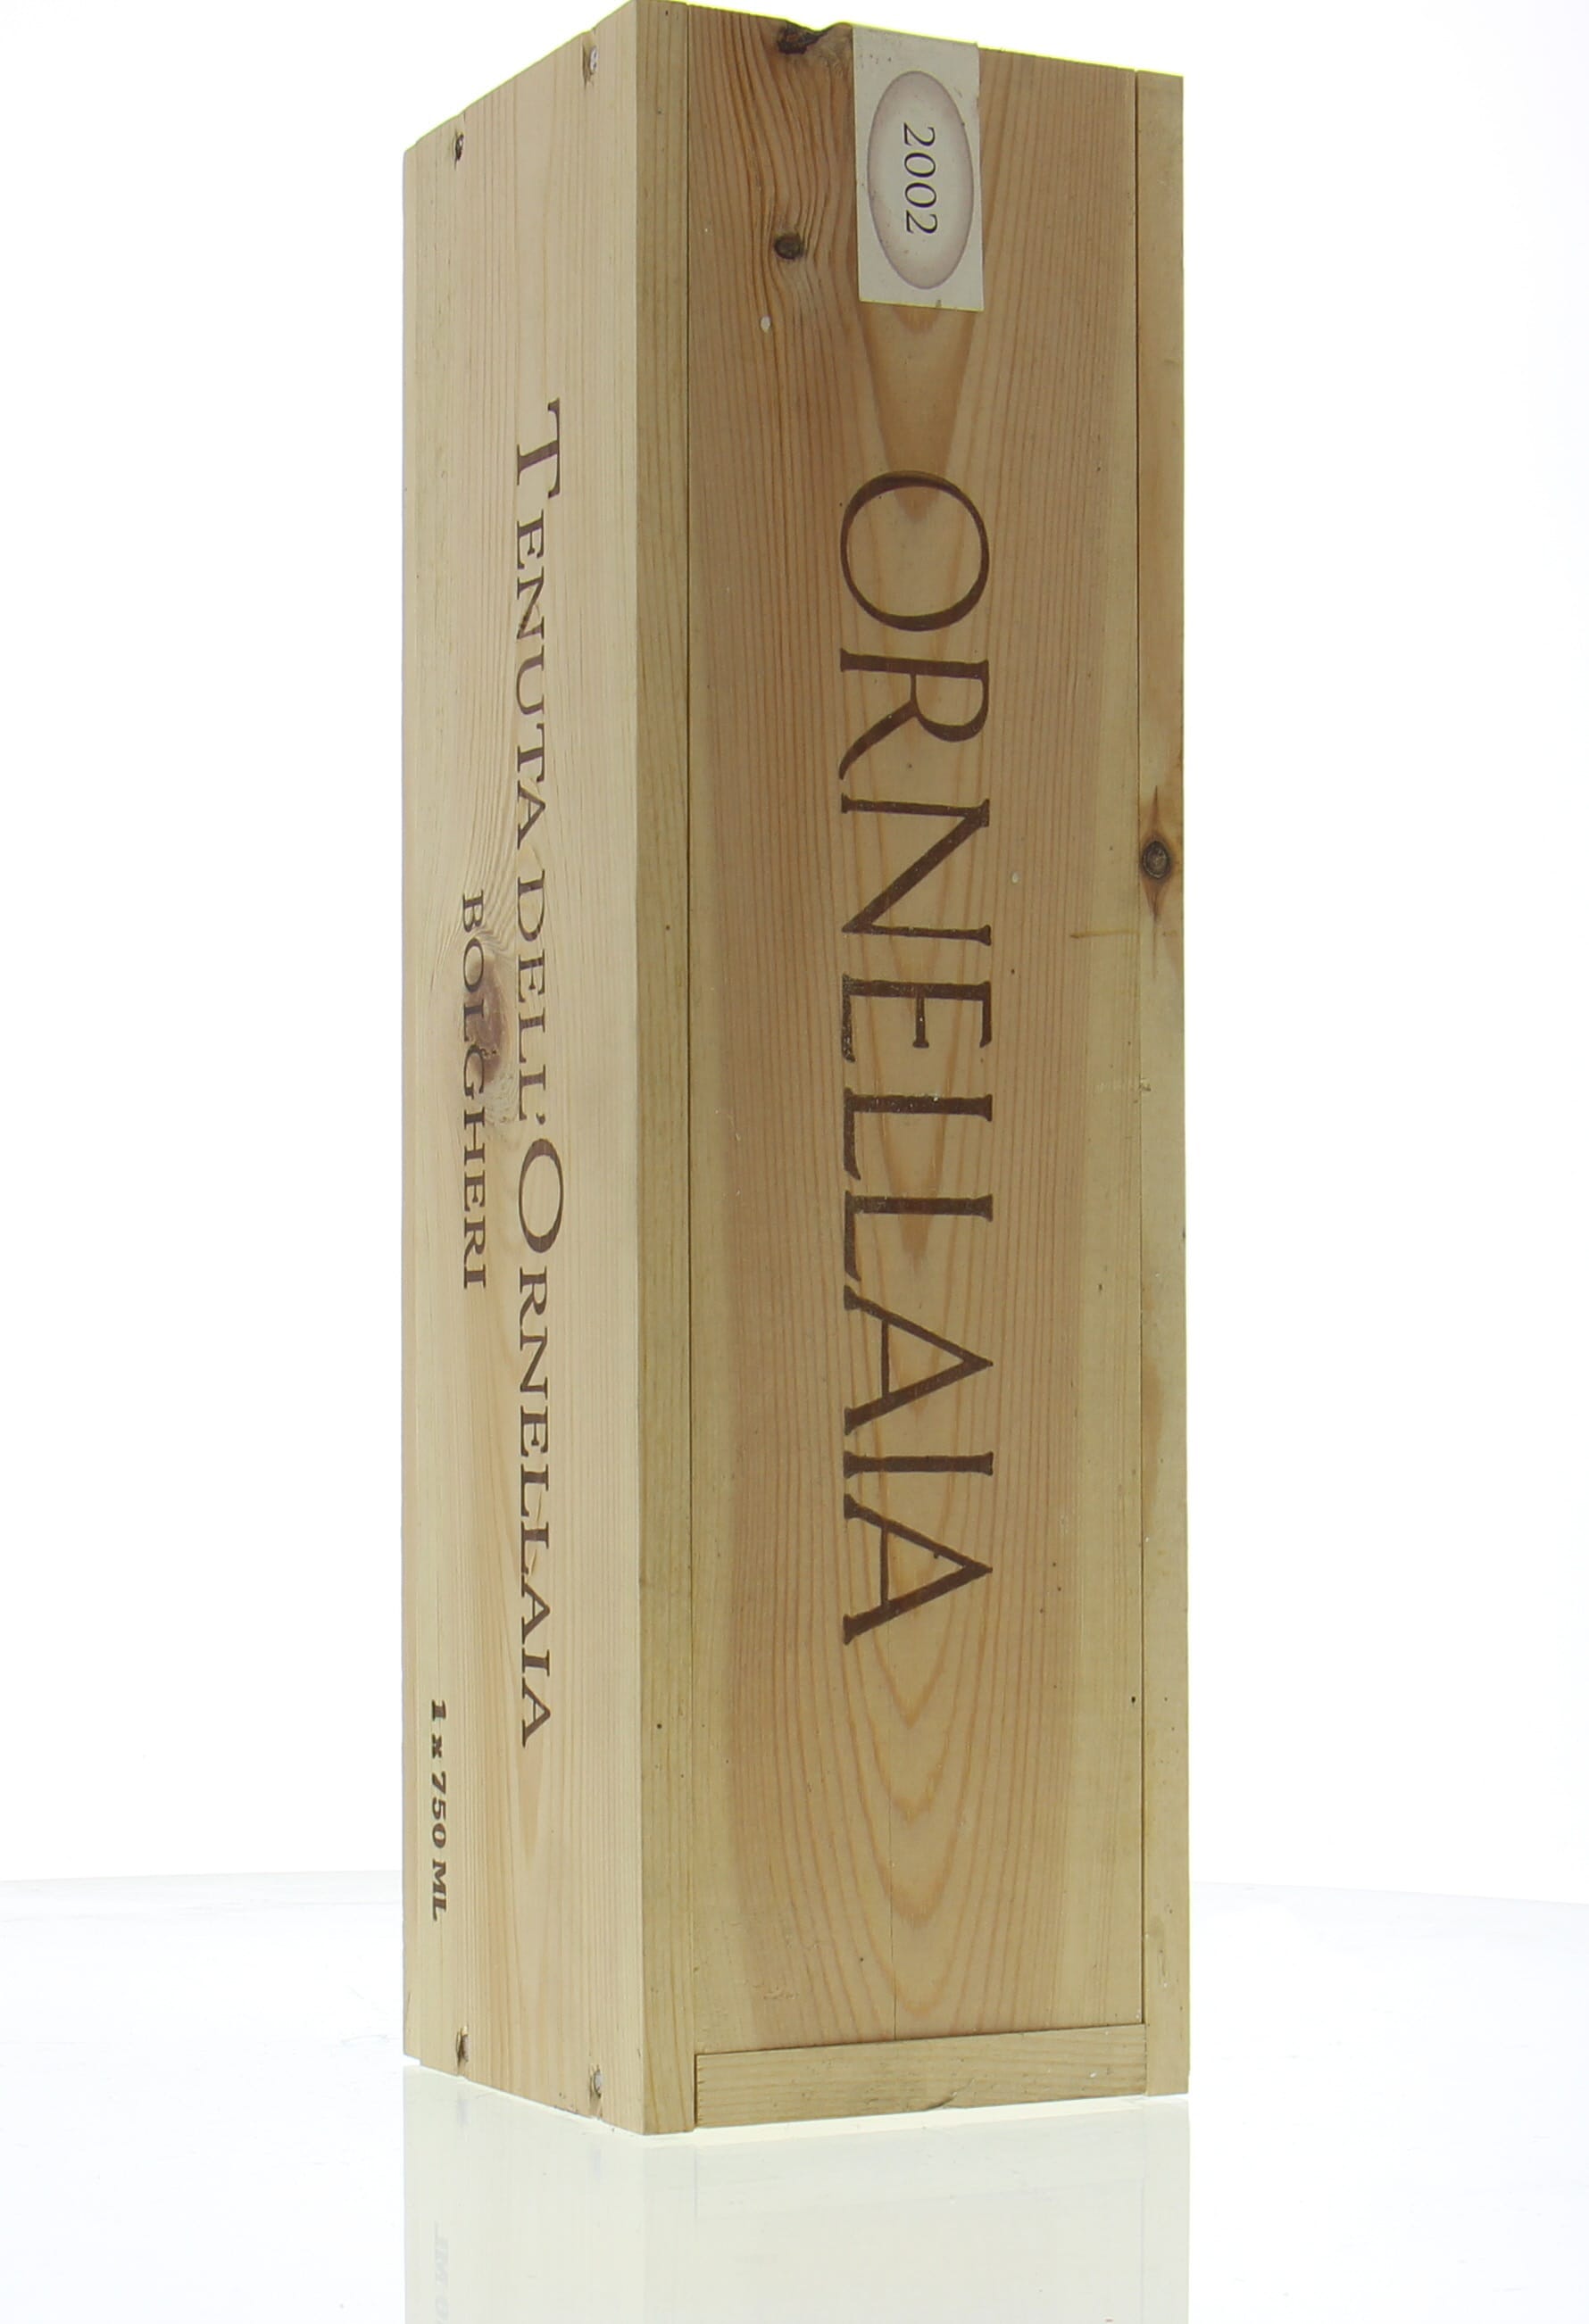 Tenuta dell' Ornellaia - Ornellaia 2002 From Original Wooden Case